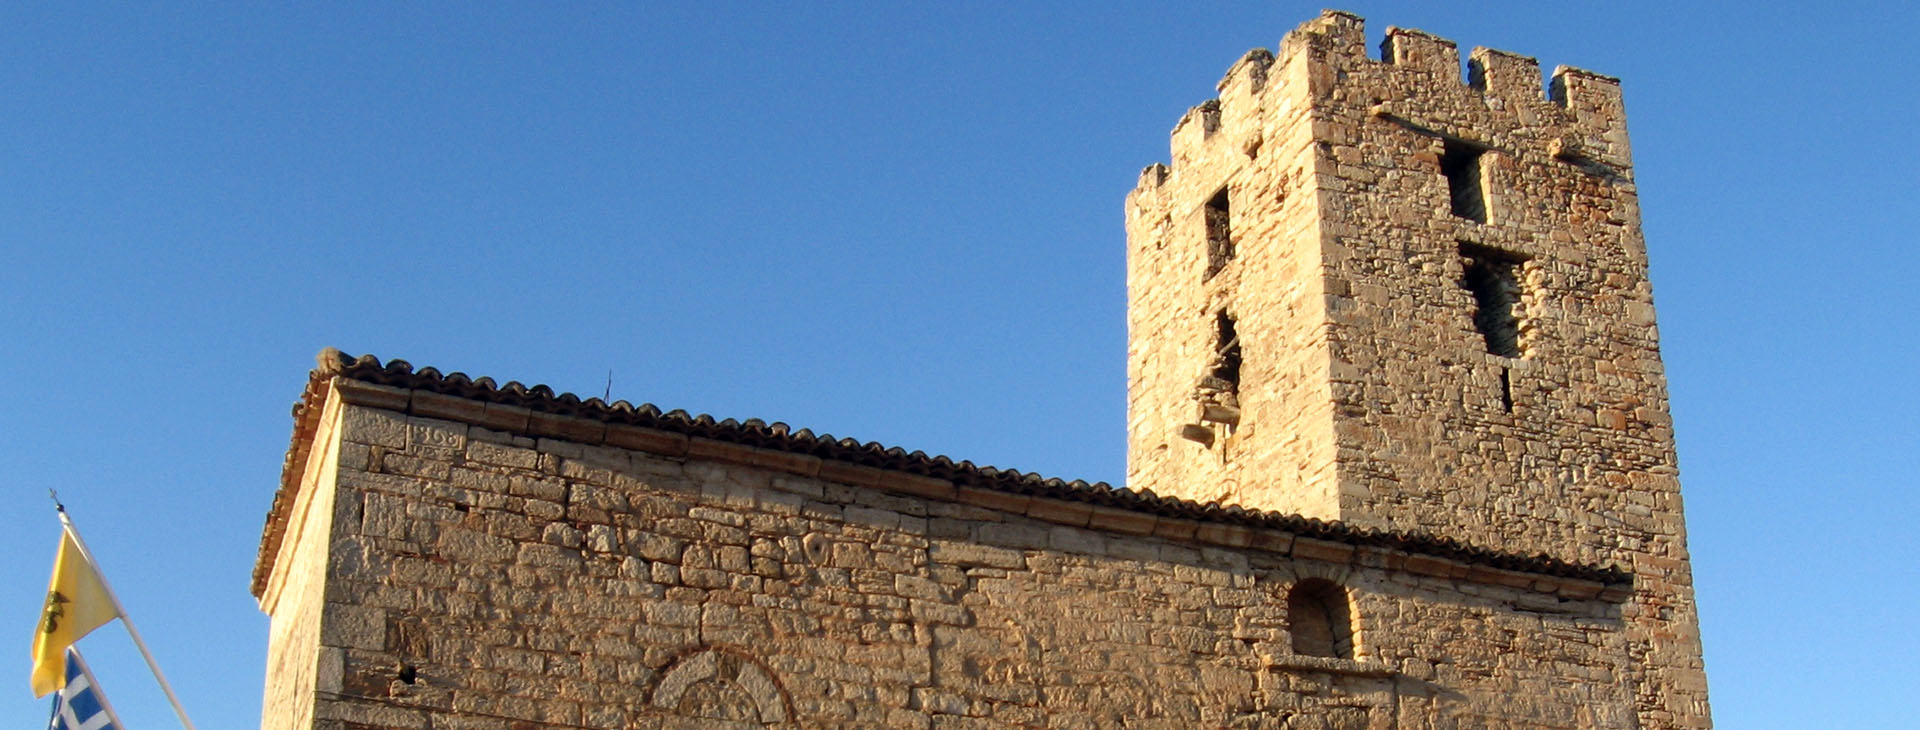 Byzantine tower at Nea Fokea, Kassandra, Halkidiki (Chalkidiki)